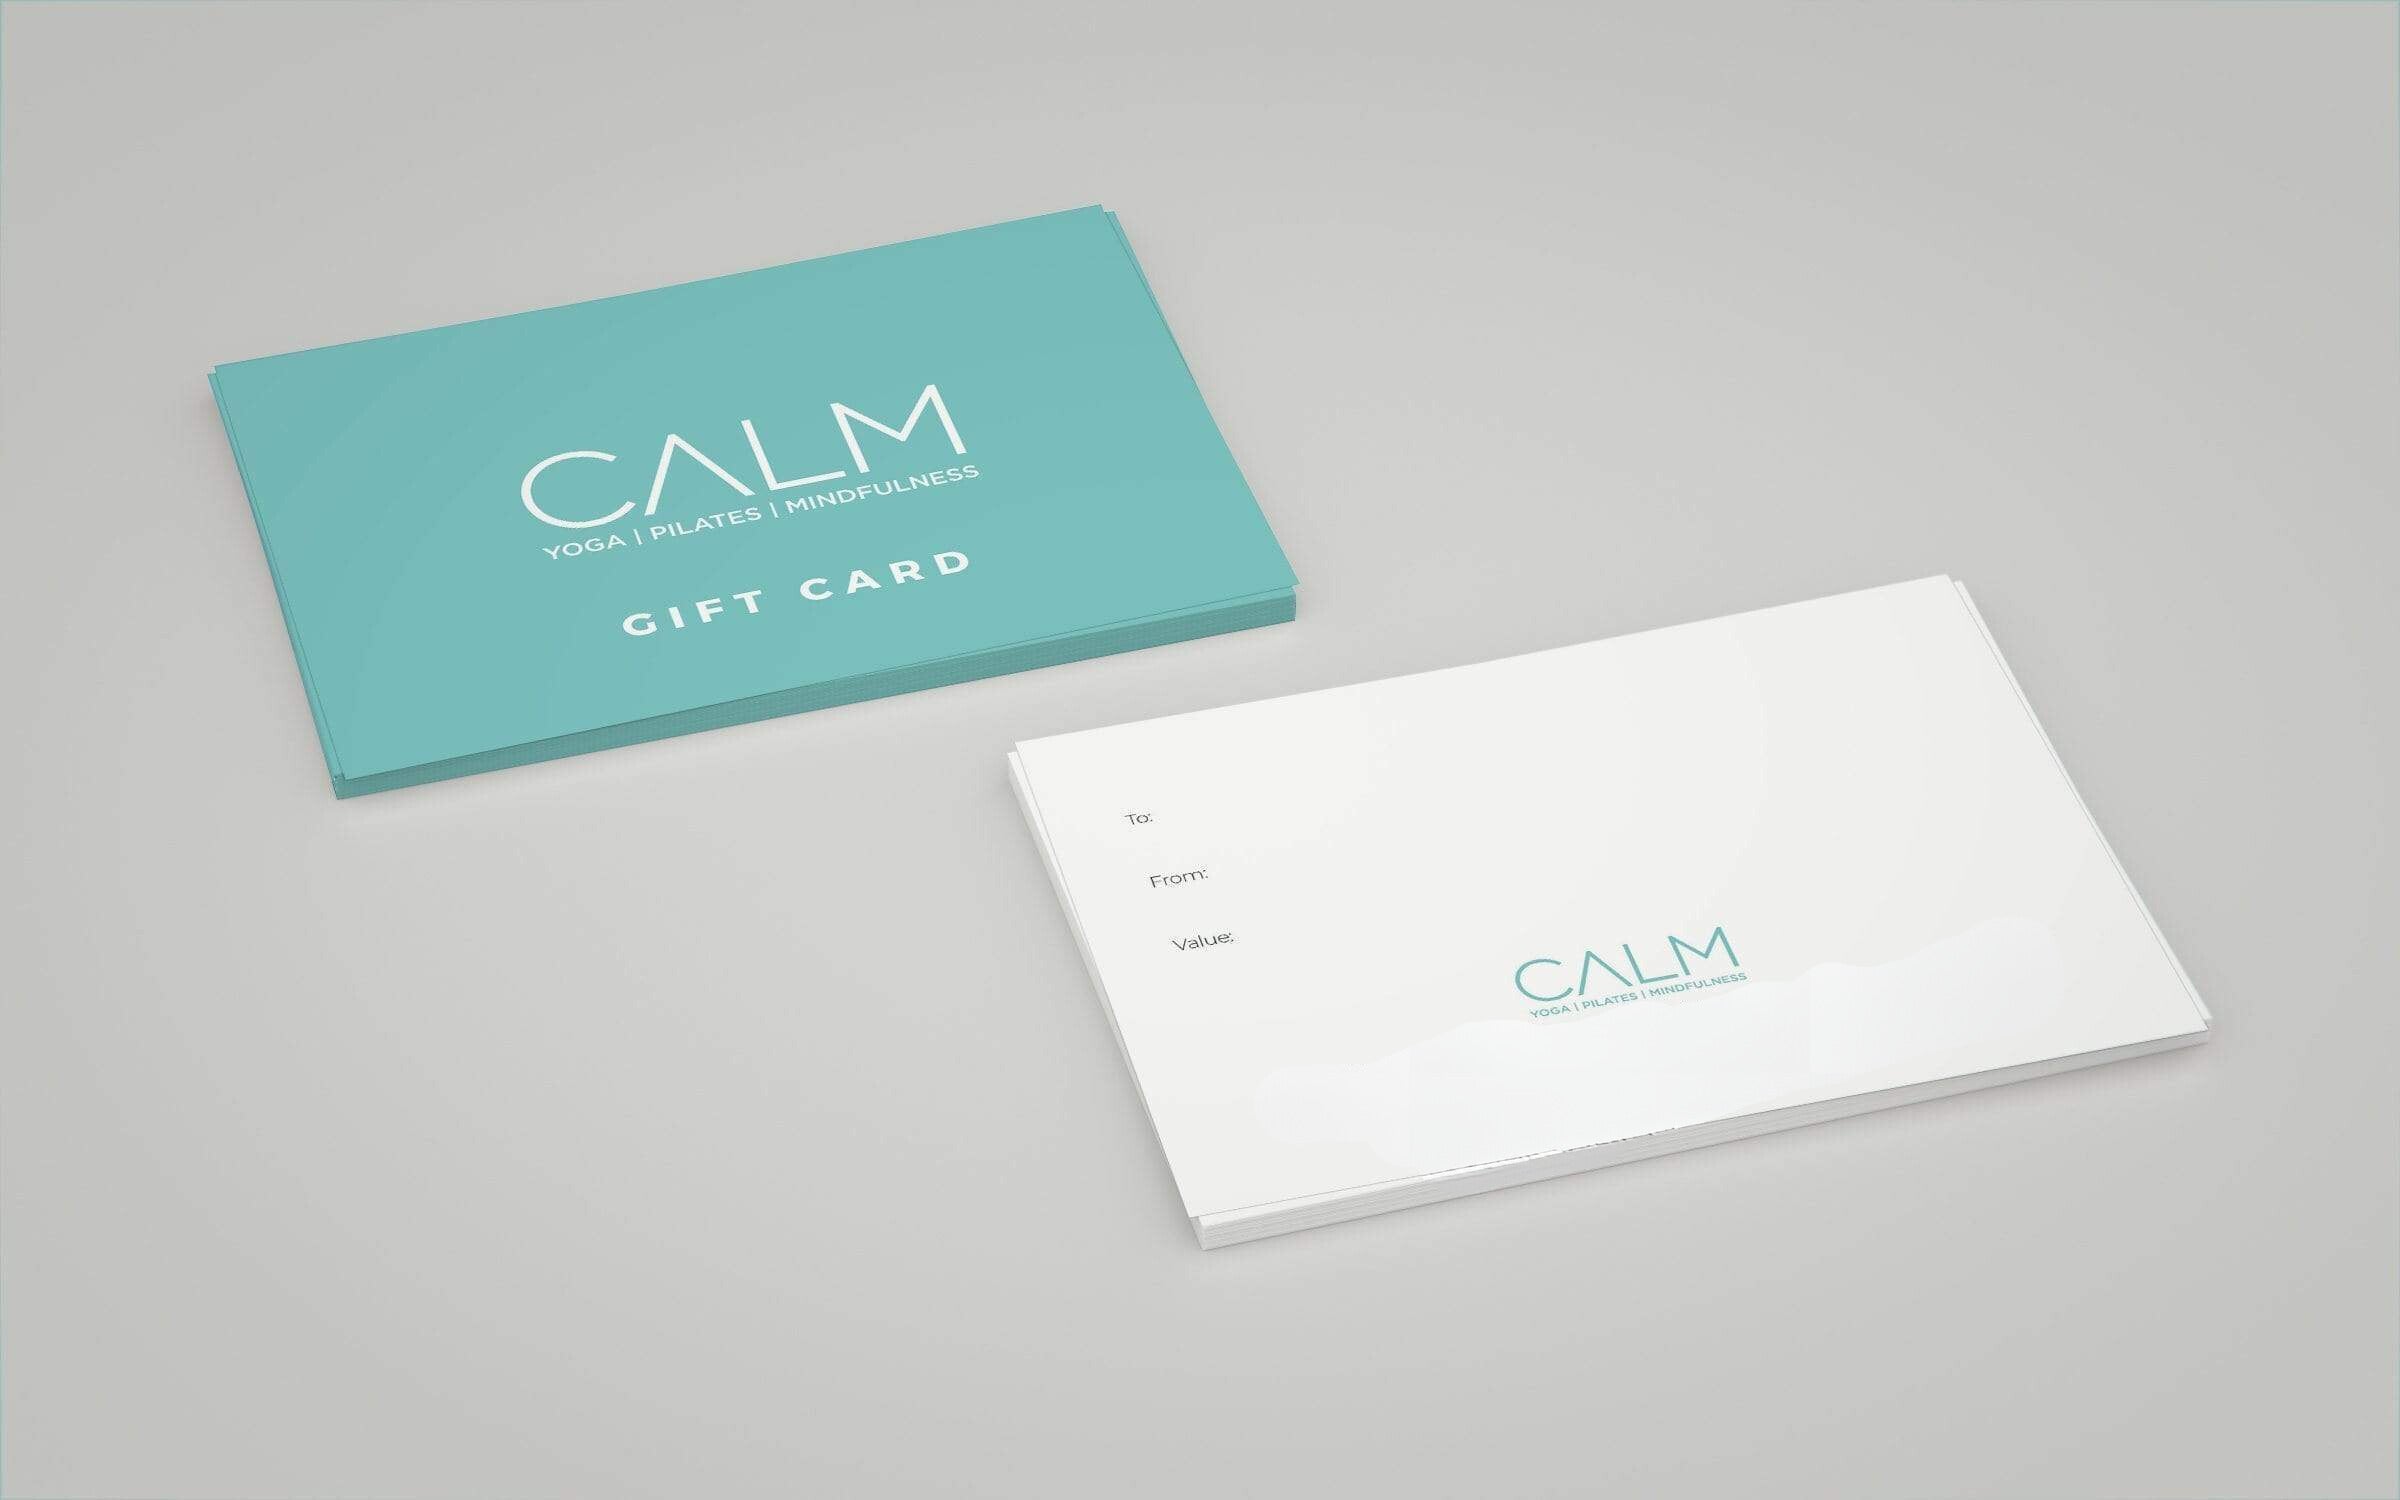 CALM Gift Card (Portugal)